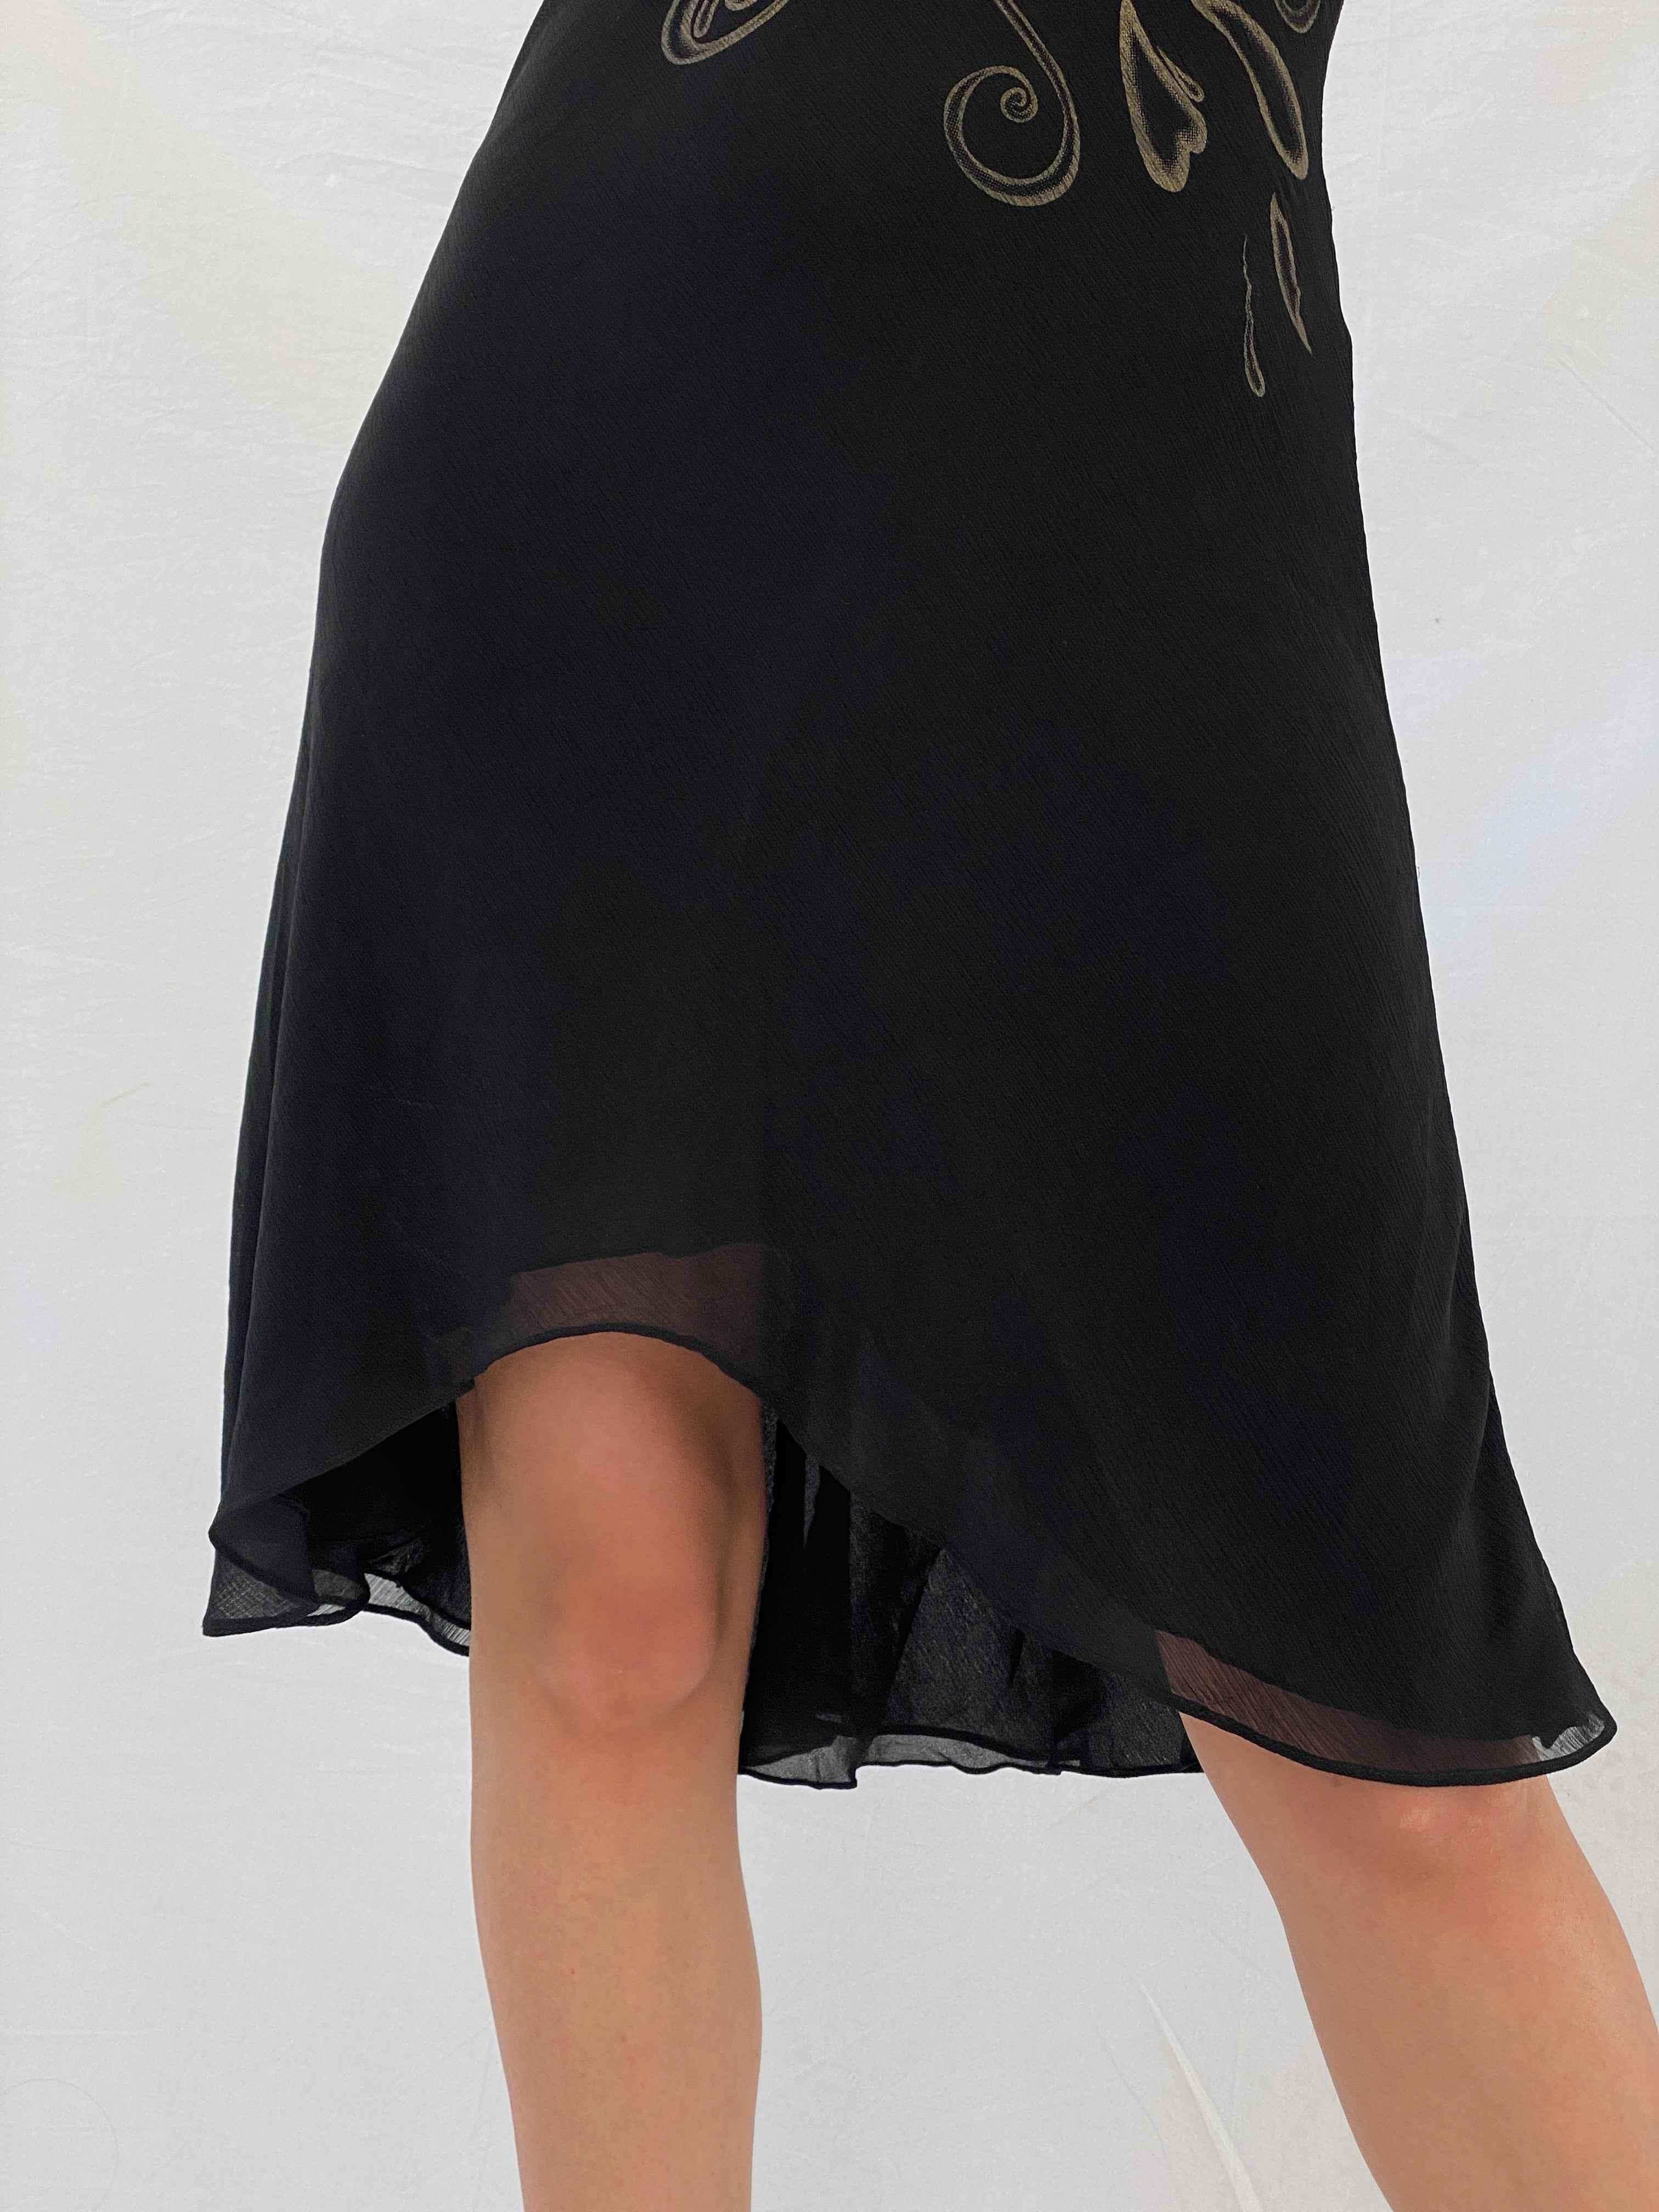 Gorgeous Wish Halter Dress - Balagan Vintage Midi Dress 00s, 90s, black dress, midi dress, Mira